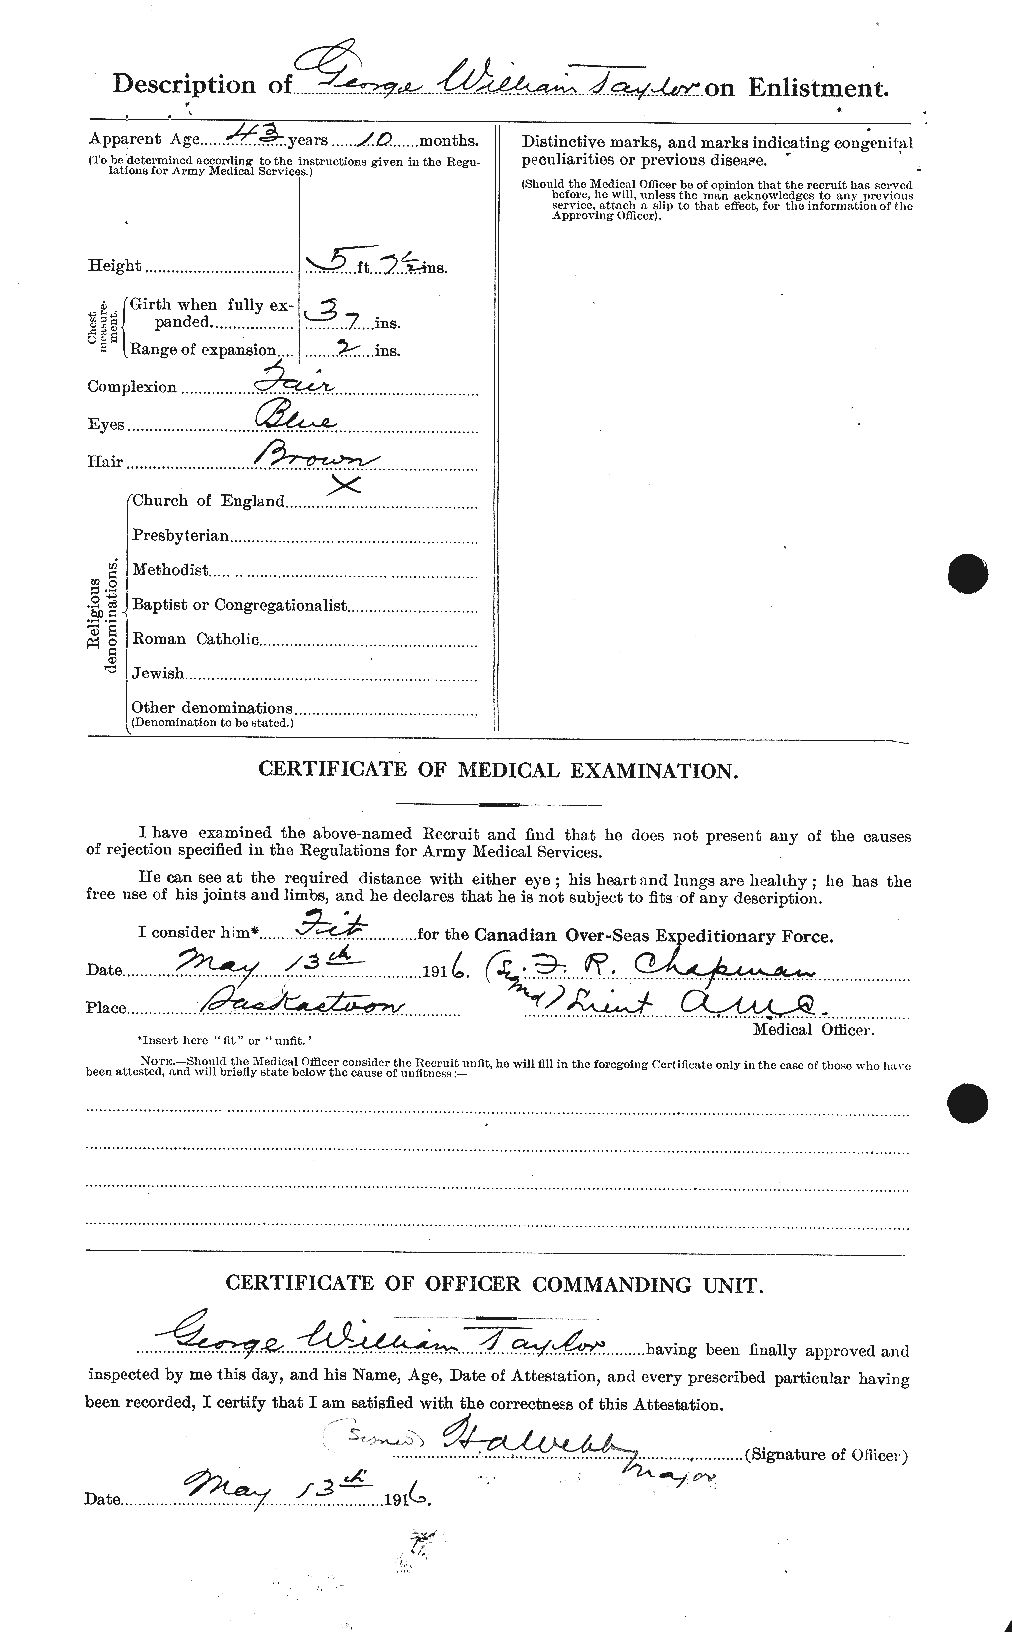 Dossiers du Personnel de la Première Guerre mondiale - CEC 626366b